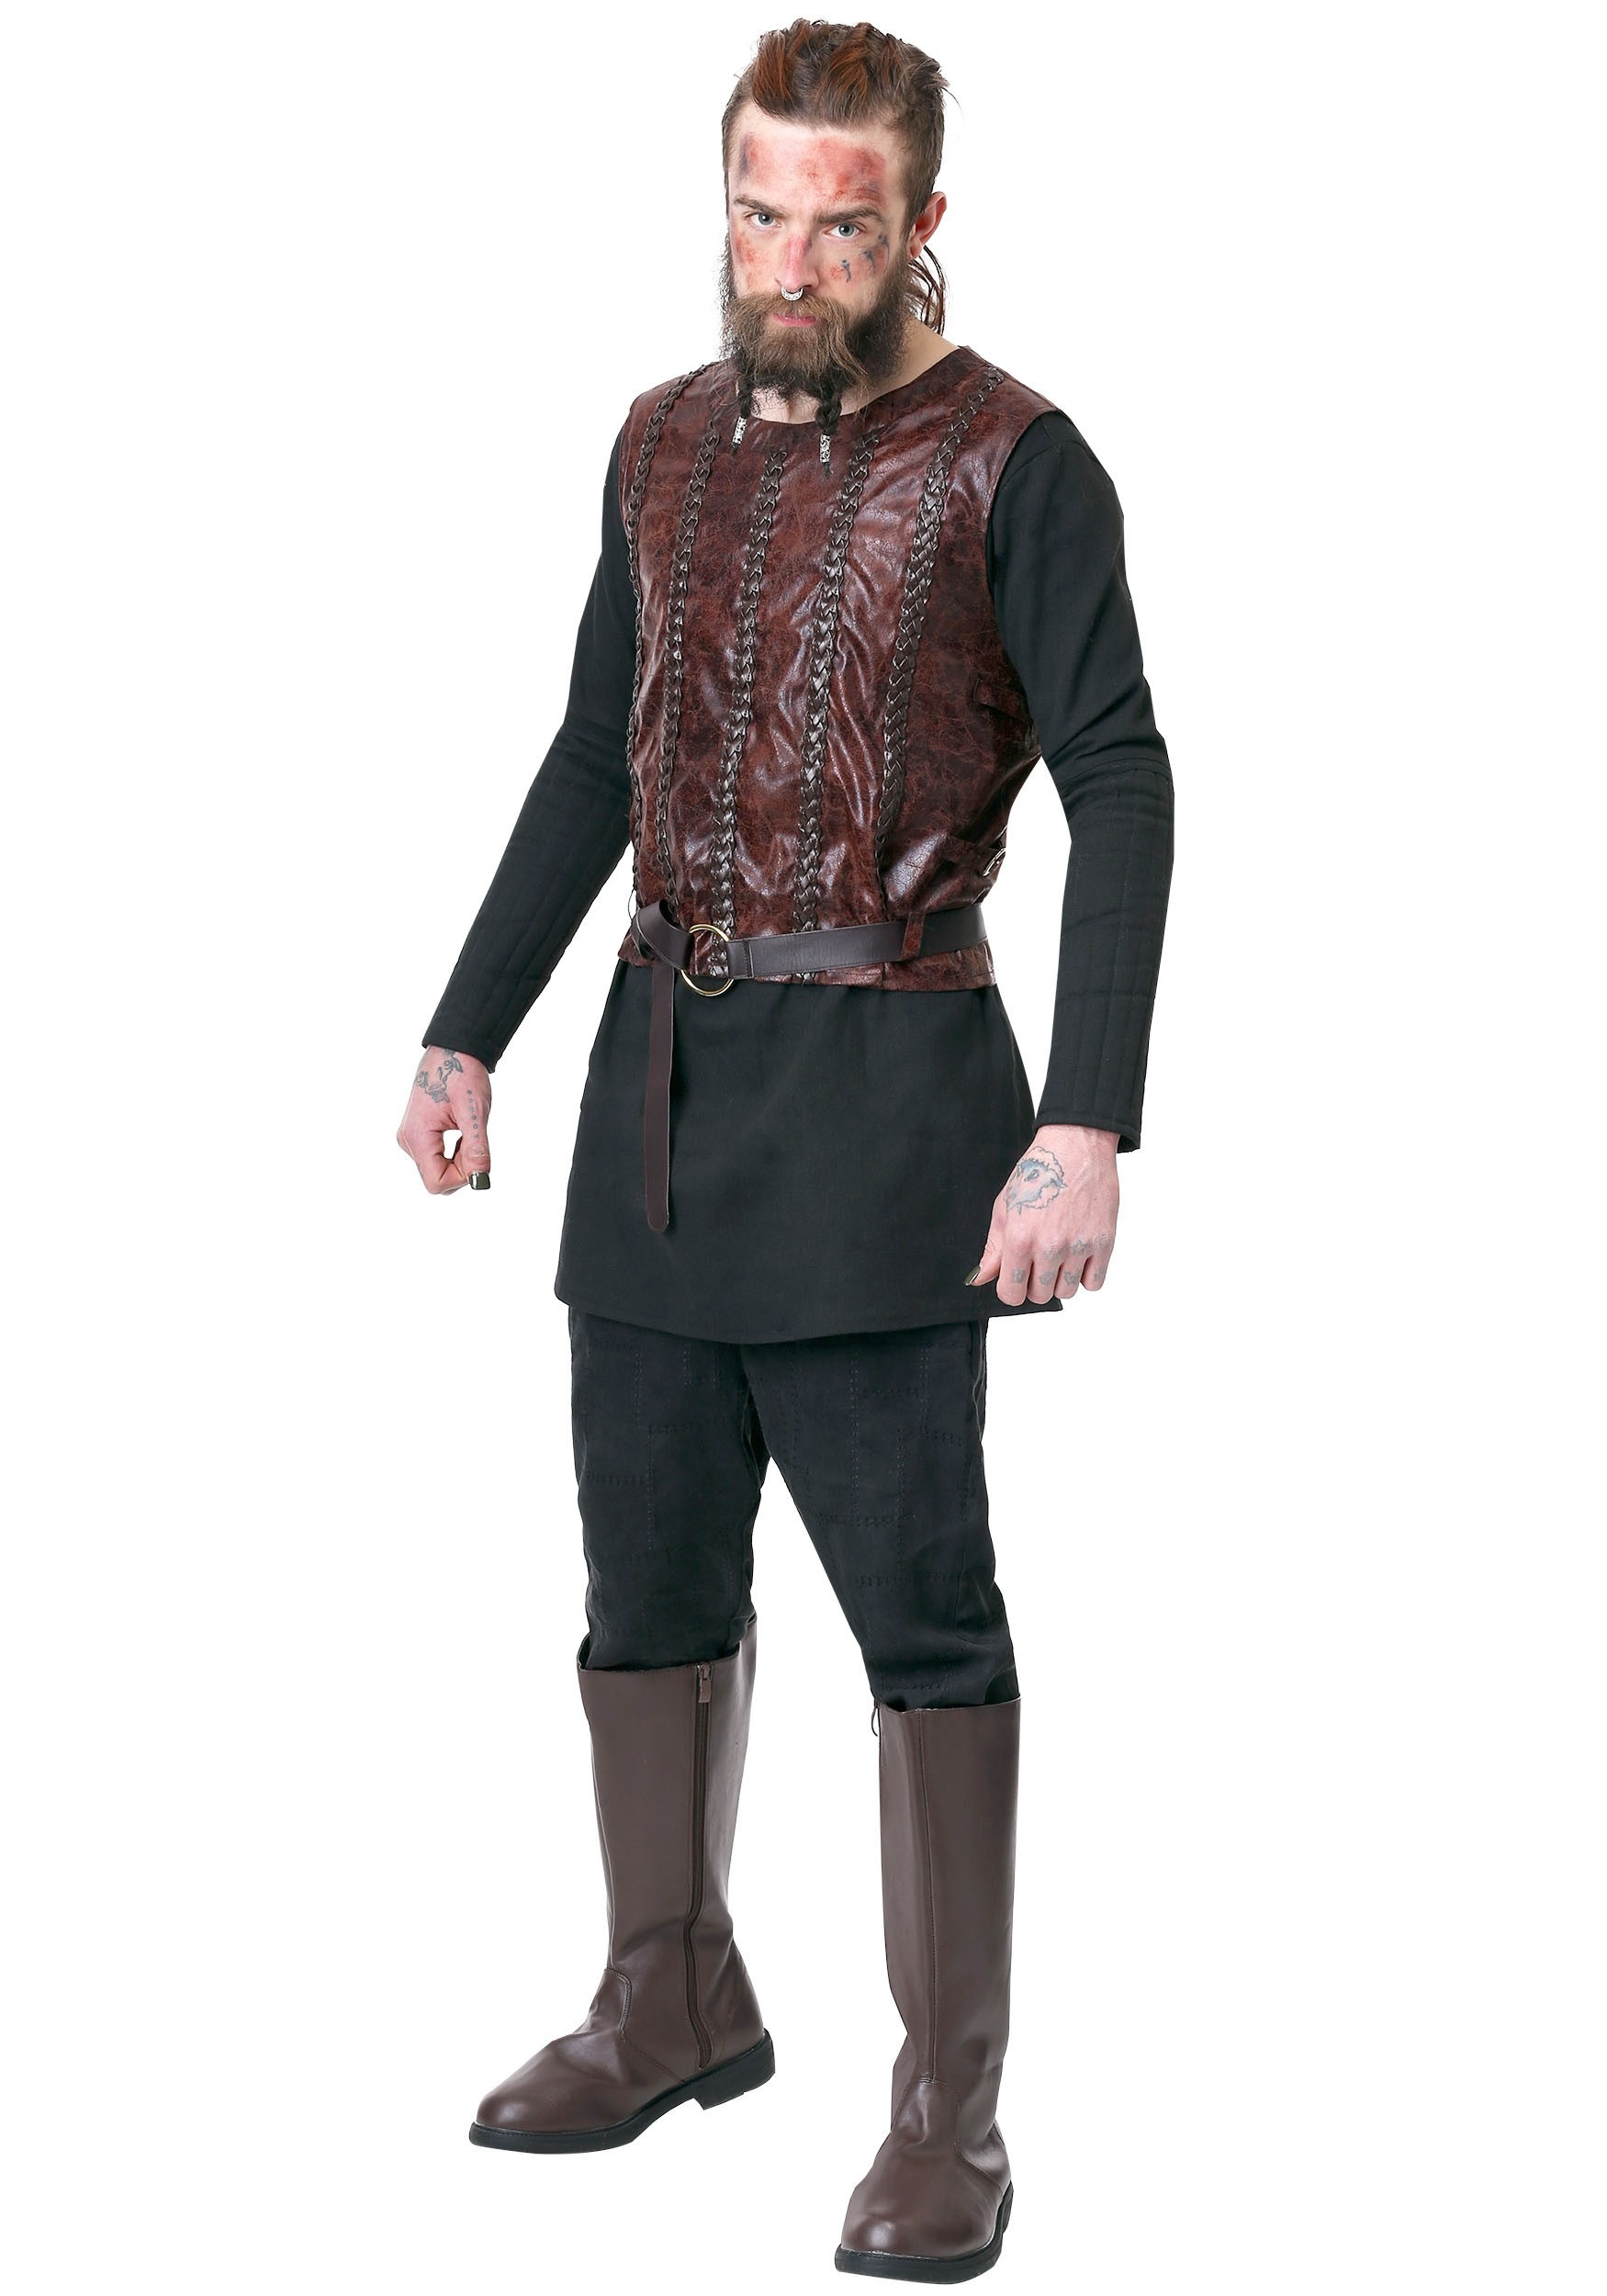 Image of Vikings Bjorn Ironside Costume for Men ID FUN6880AD-L